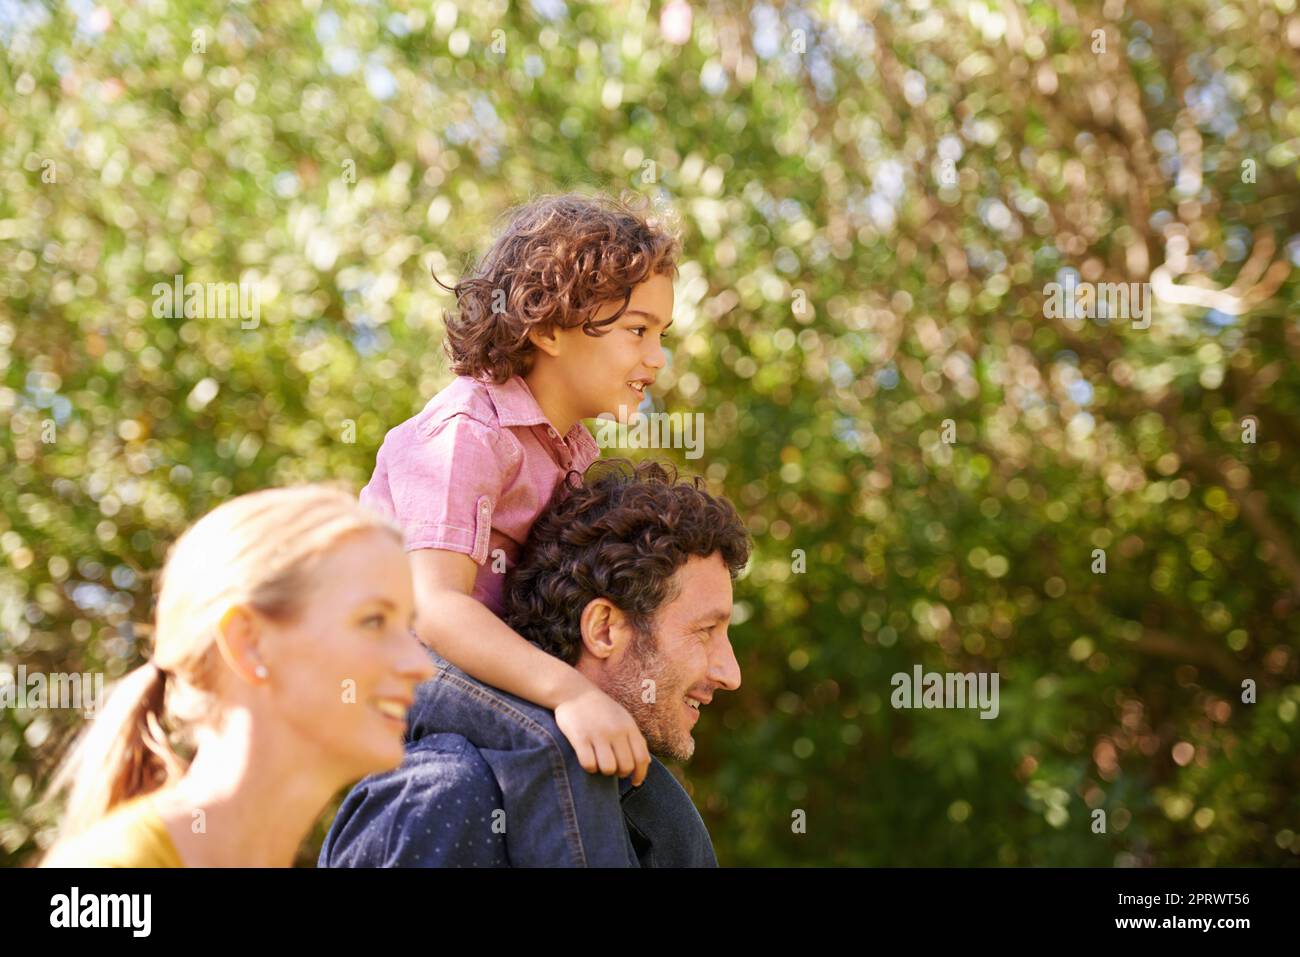 Passons une journée dans la nature. Un jeune enfant une famille à l'extérieur dans la nature. Banque D'Images